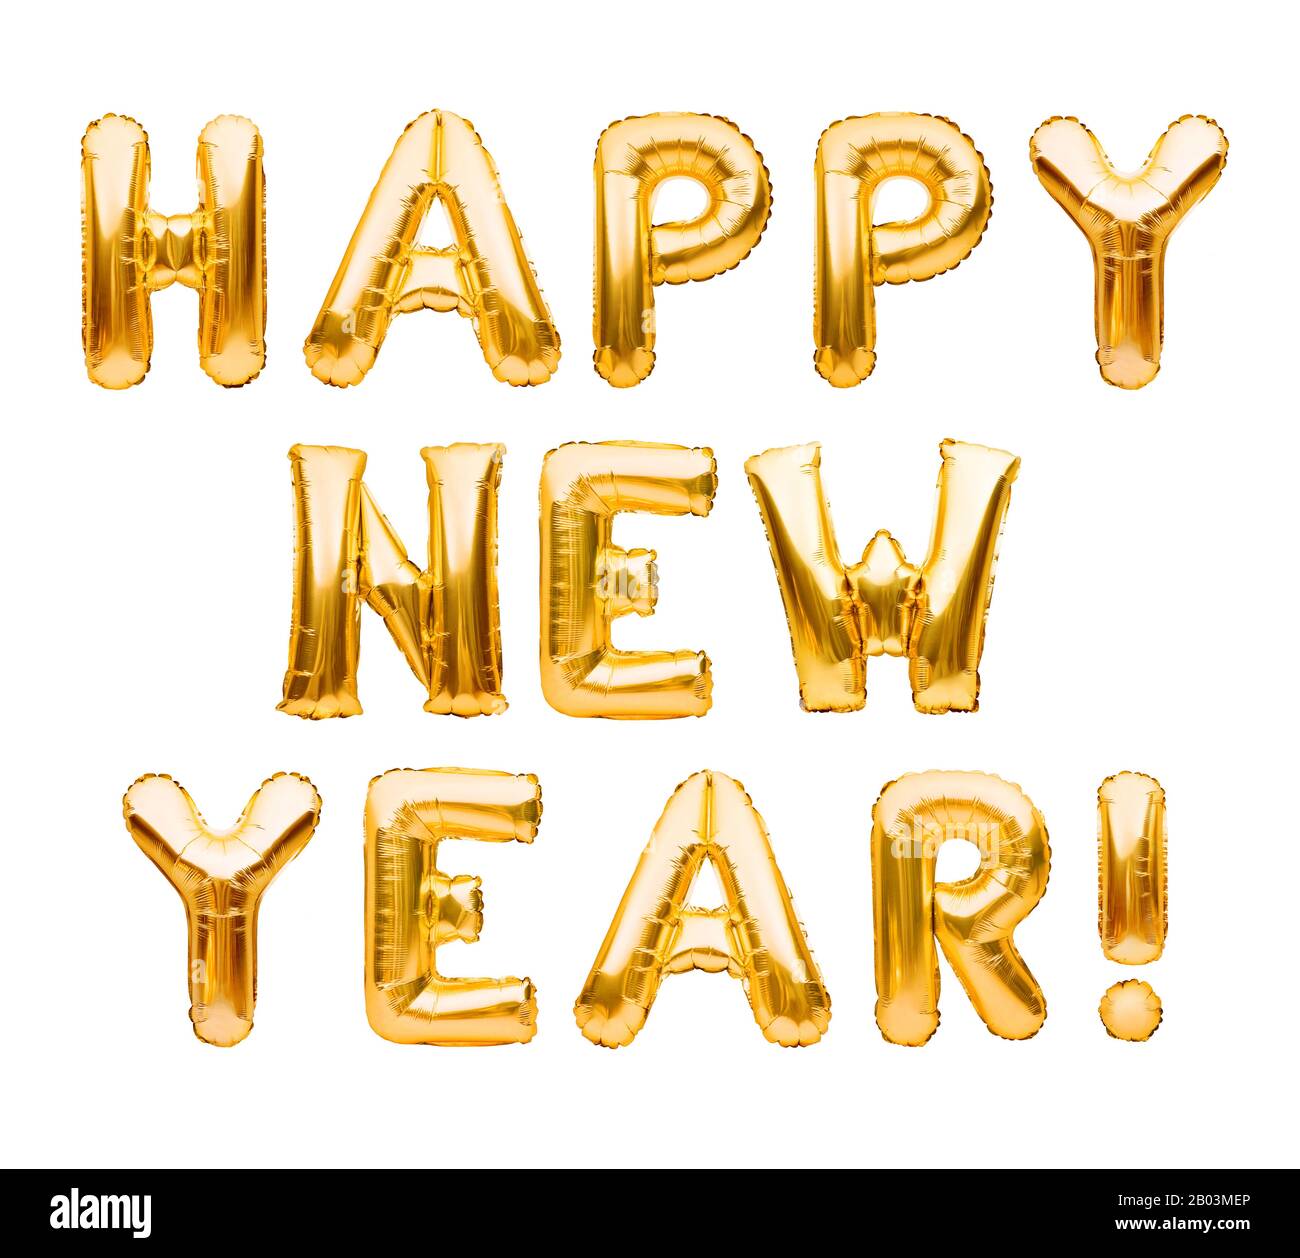 Bonne année phrase faite de ballons gonflables dorés isolés sur blanc. Ballons d'hélium formant Bonne année félicitations, fête du fleuret Banque D'Images